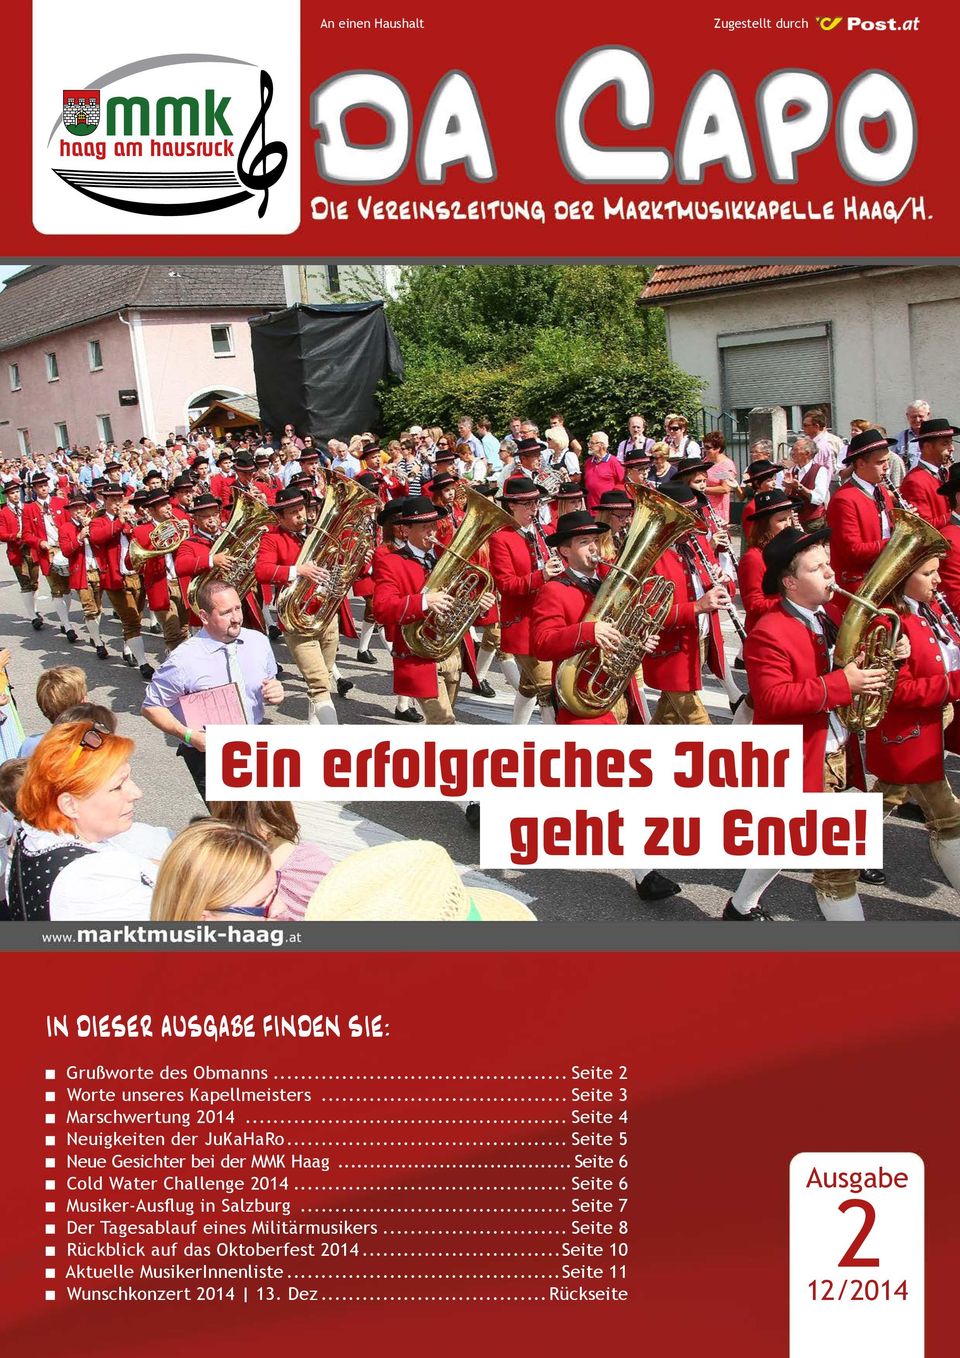 .. Seite 5 Neue Gesichter bei der MMK Haag... Seite 6 Cold Water Challenge 2014... Seite 6 Musiker-Ausflug in Salzburg.